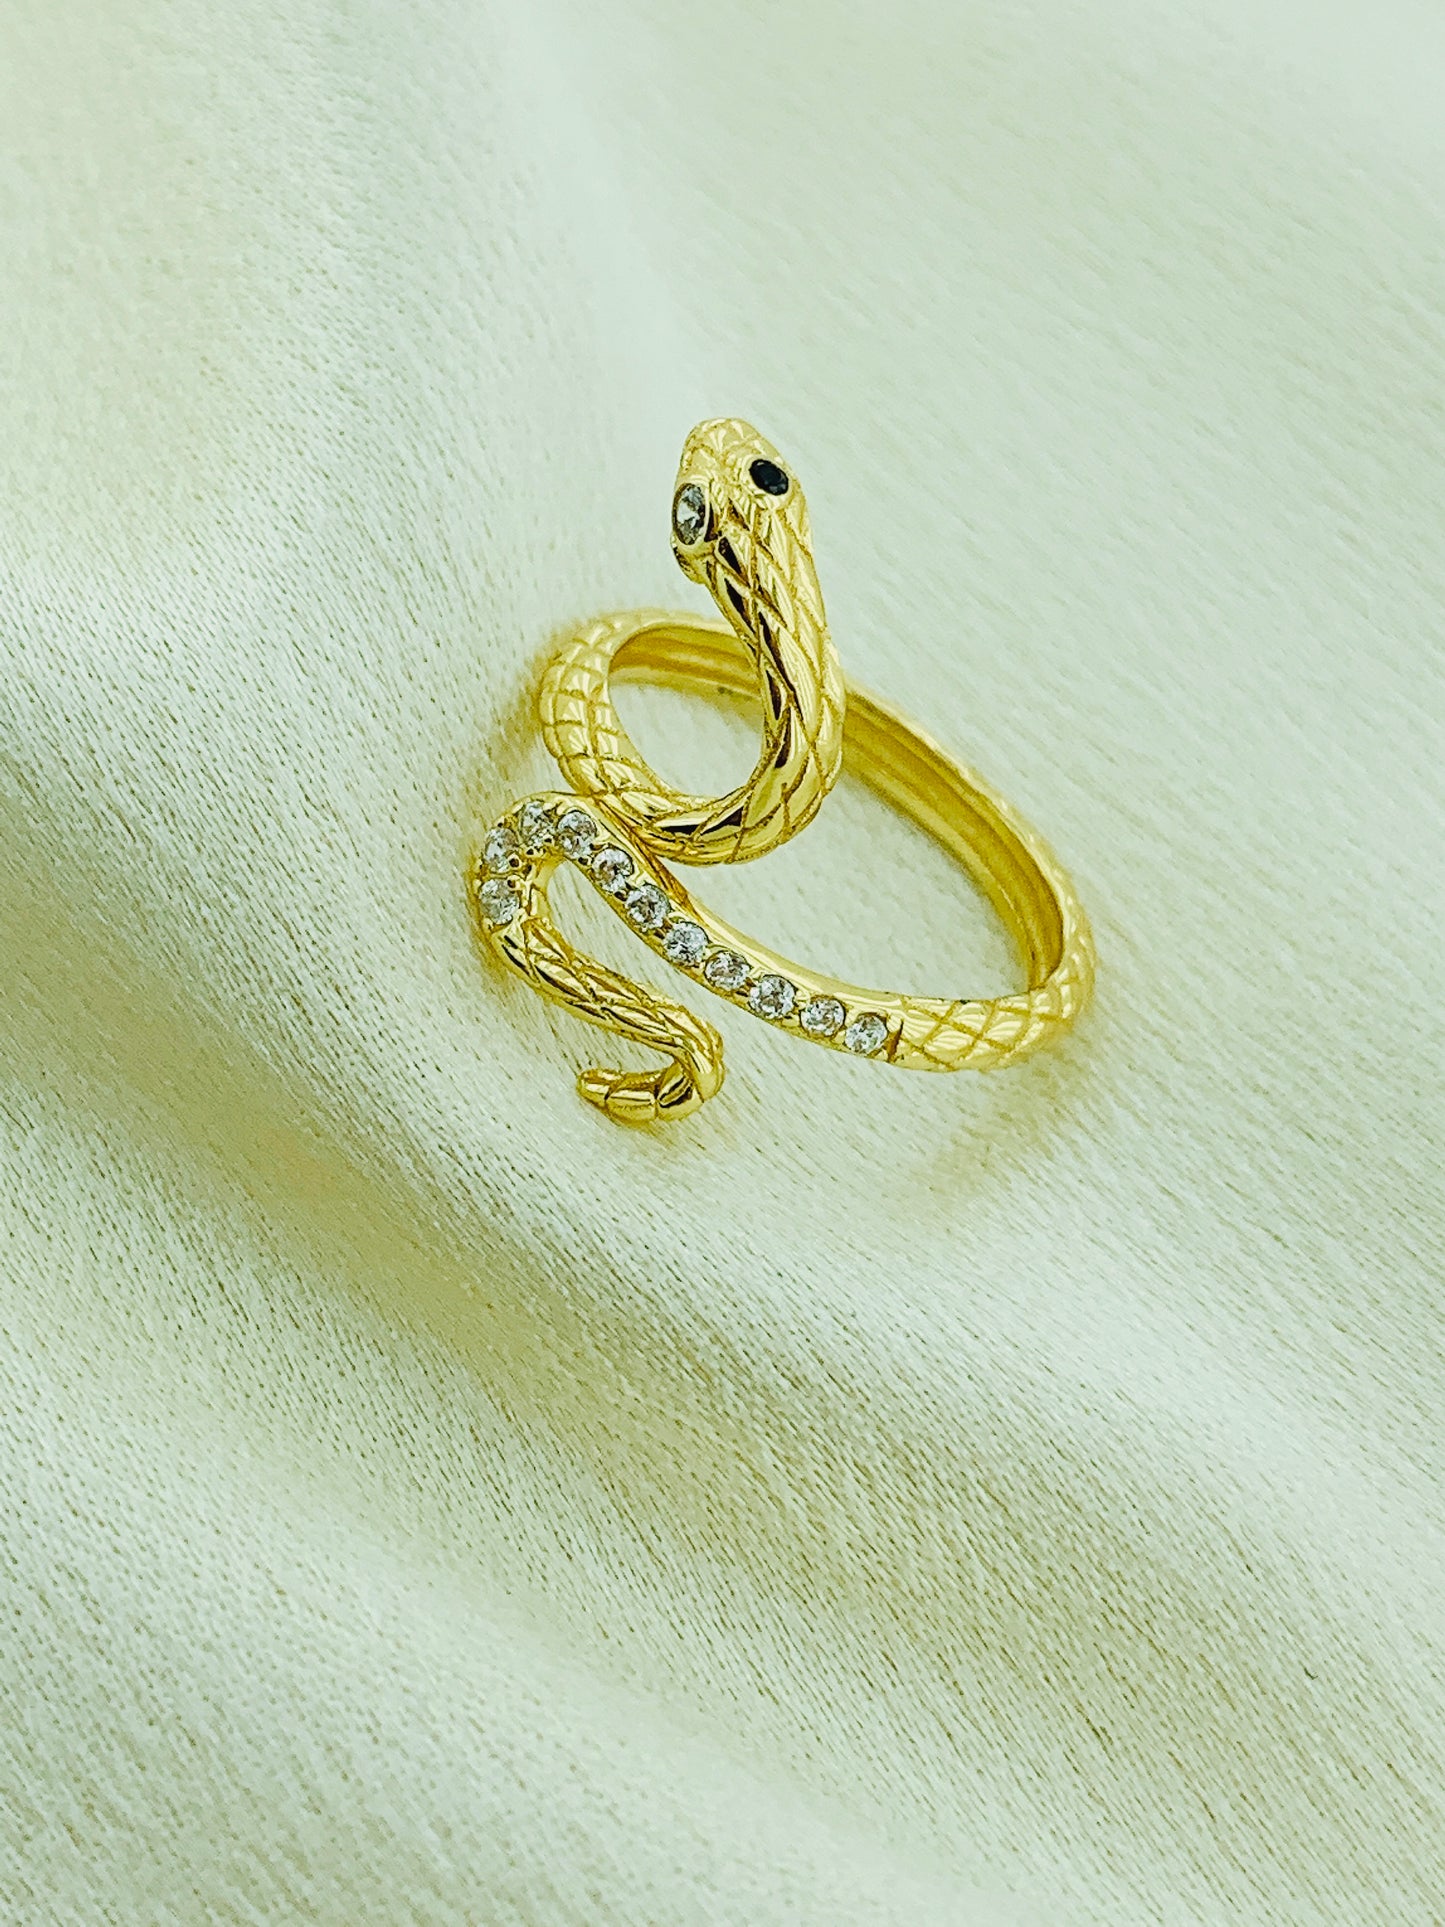 Women's Fashion Snake Ring